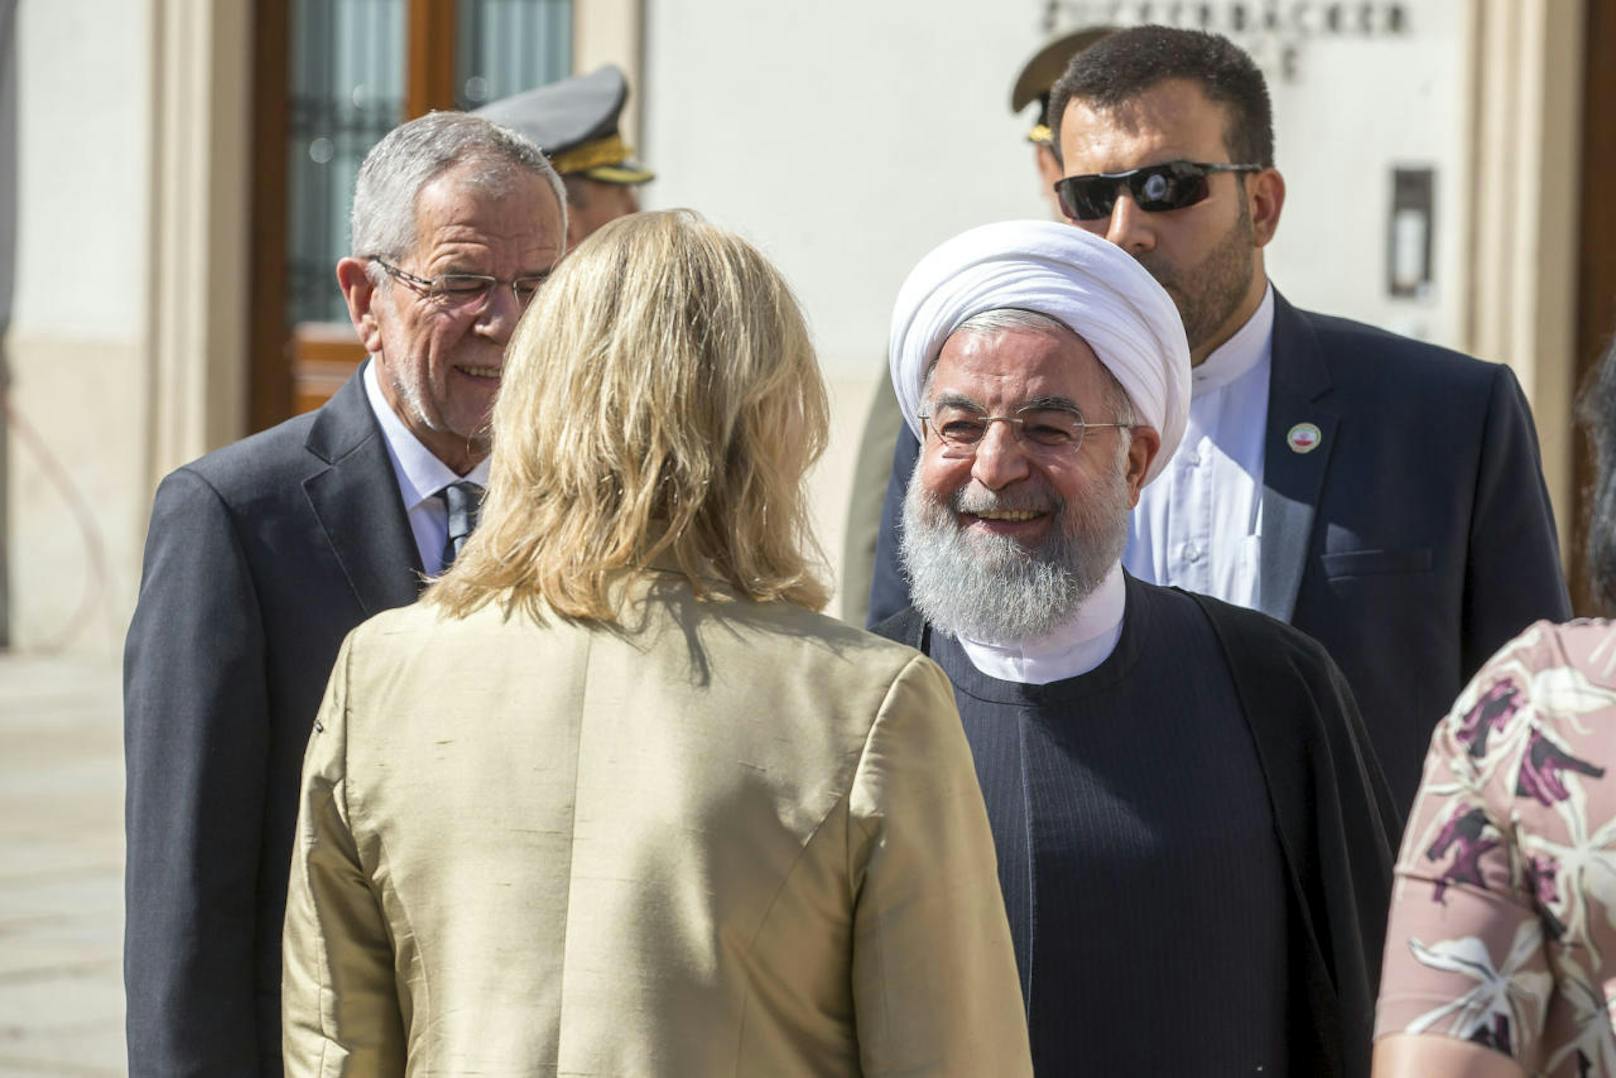 Der iranische Präsident Hassan Rouhani besuchte am Mittwoch Wien. Auf dem Programm stehen unter anderem Beratungen über die Rettung des Atomdeals, aus dem die USA ausgestiegen sind.